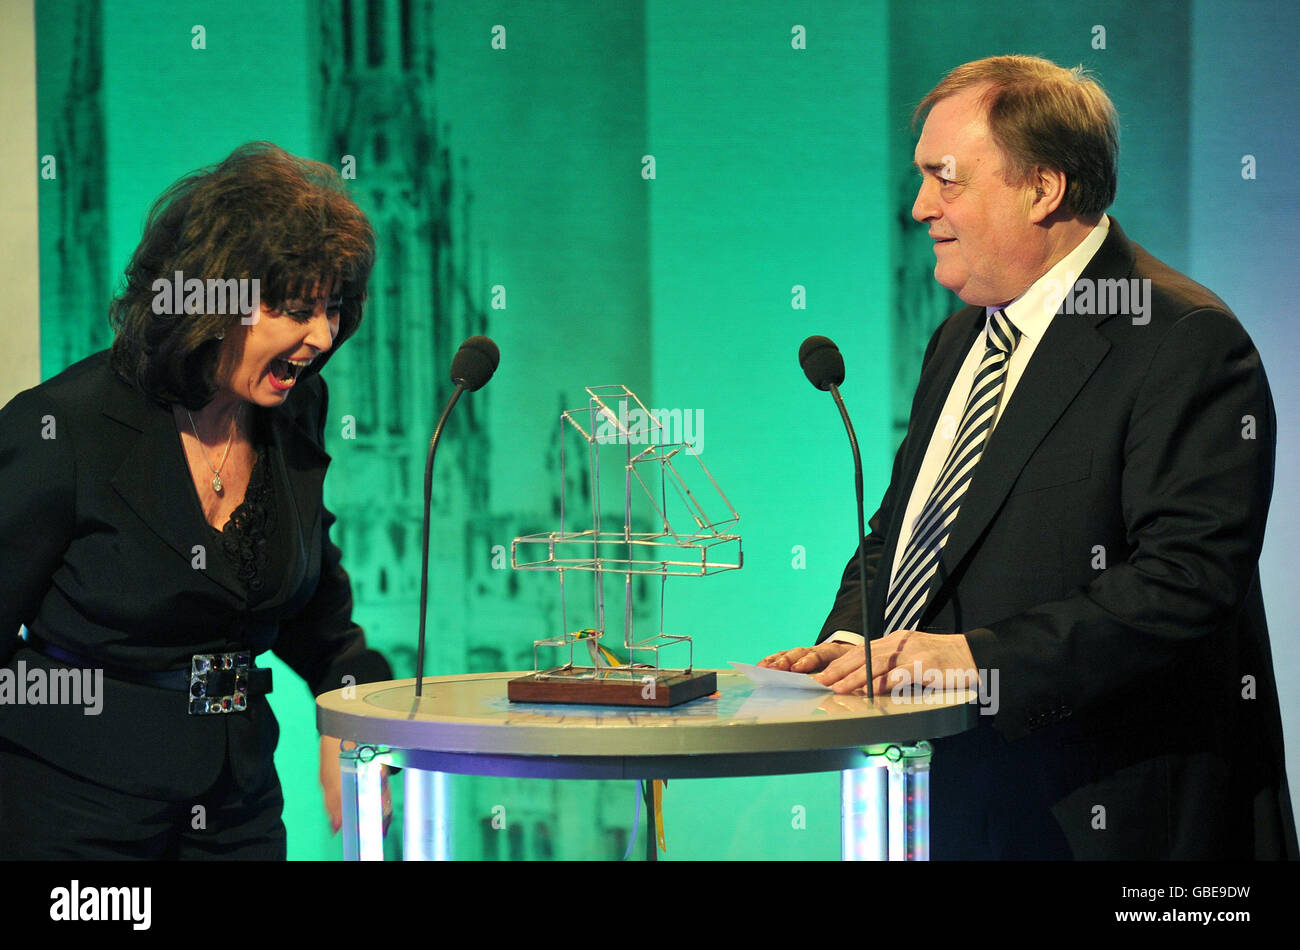 John e Pauline Prescott accettano entrambi il Politics in the Media Award, durante la cerimonia di premiazione politica di Channel 4 News a Londra. Foto Stock